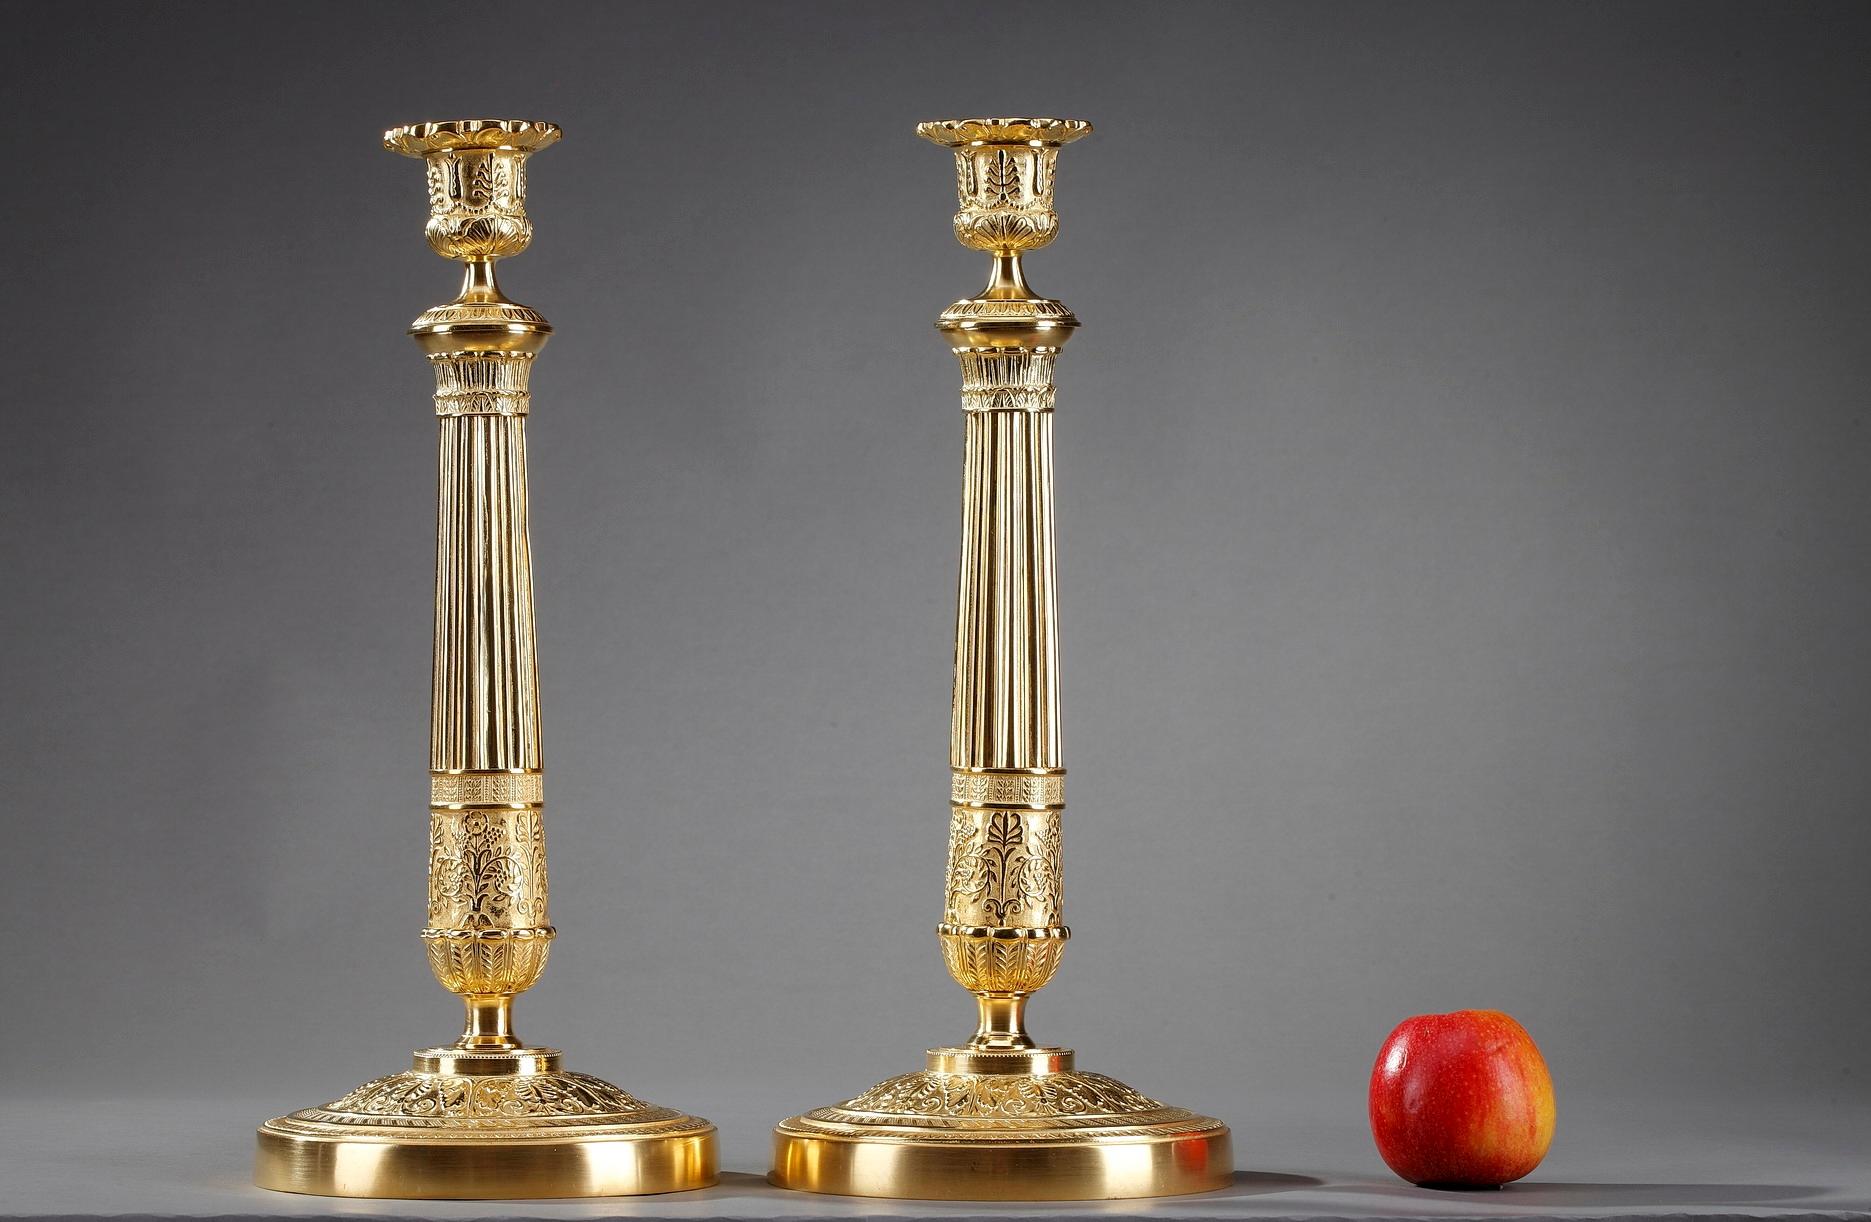 Große französische restaurierte Ormolu-Kerzenleuchter. Das Paar ist aus vergoldeter Bronze gefertigt und zeigt ein fein ziseliertes Motiv aus Blattwerk und Akanthusblättern. Die Fassungen sind mit Palmetten und Blumenmotiven verziert. Die